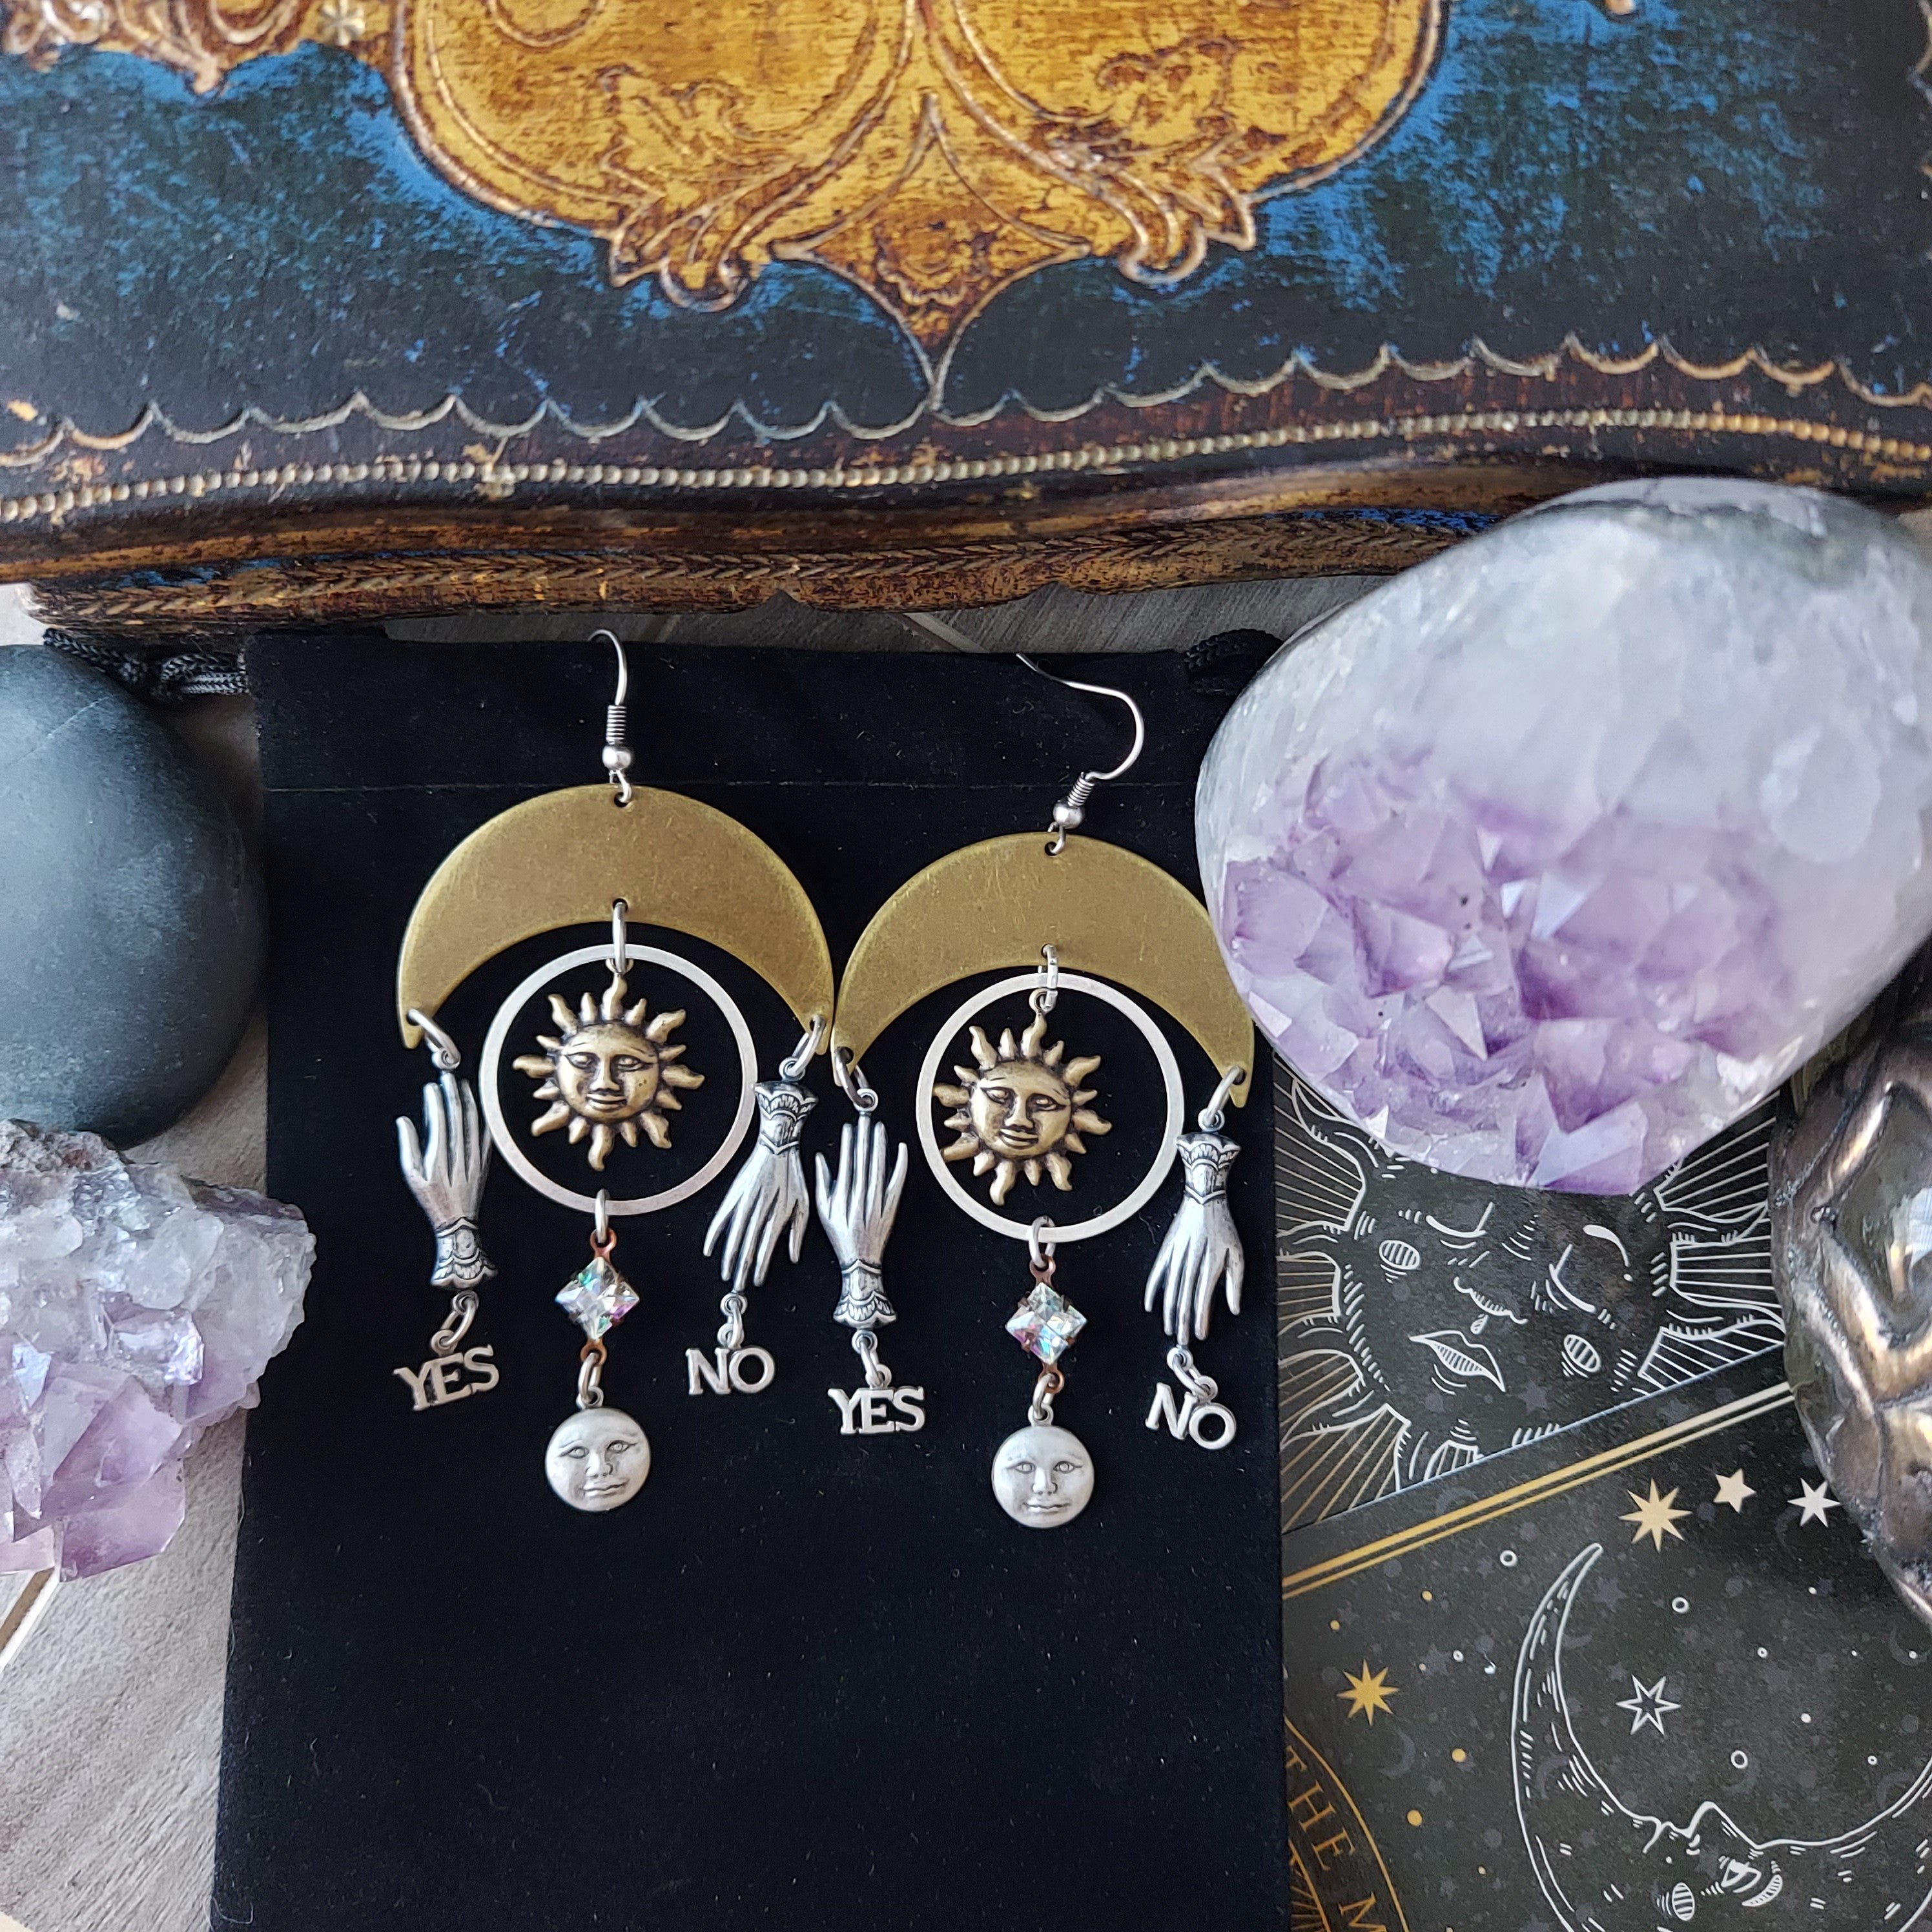 Buy Statement Raffia Earrings Boho Drop Dangle Earrings for Women Handmade  Fashion Earring Bohemian Gift Jewelry for Girls(Black) at Amazon.in